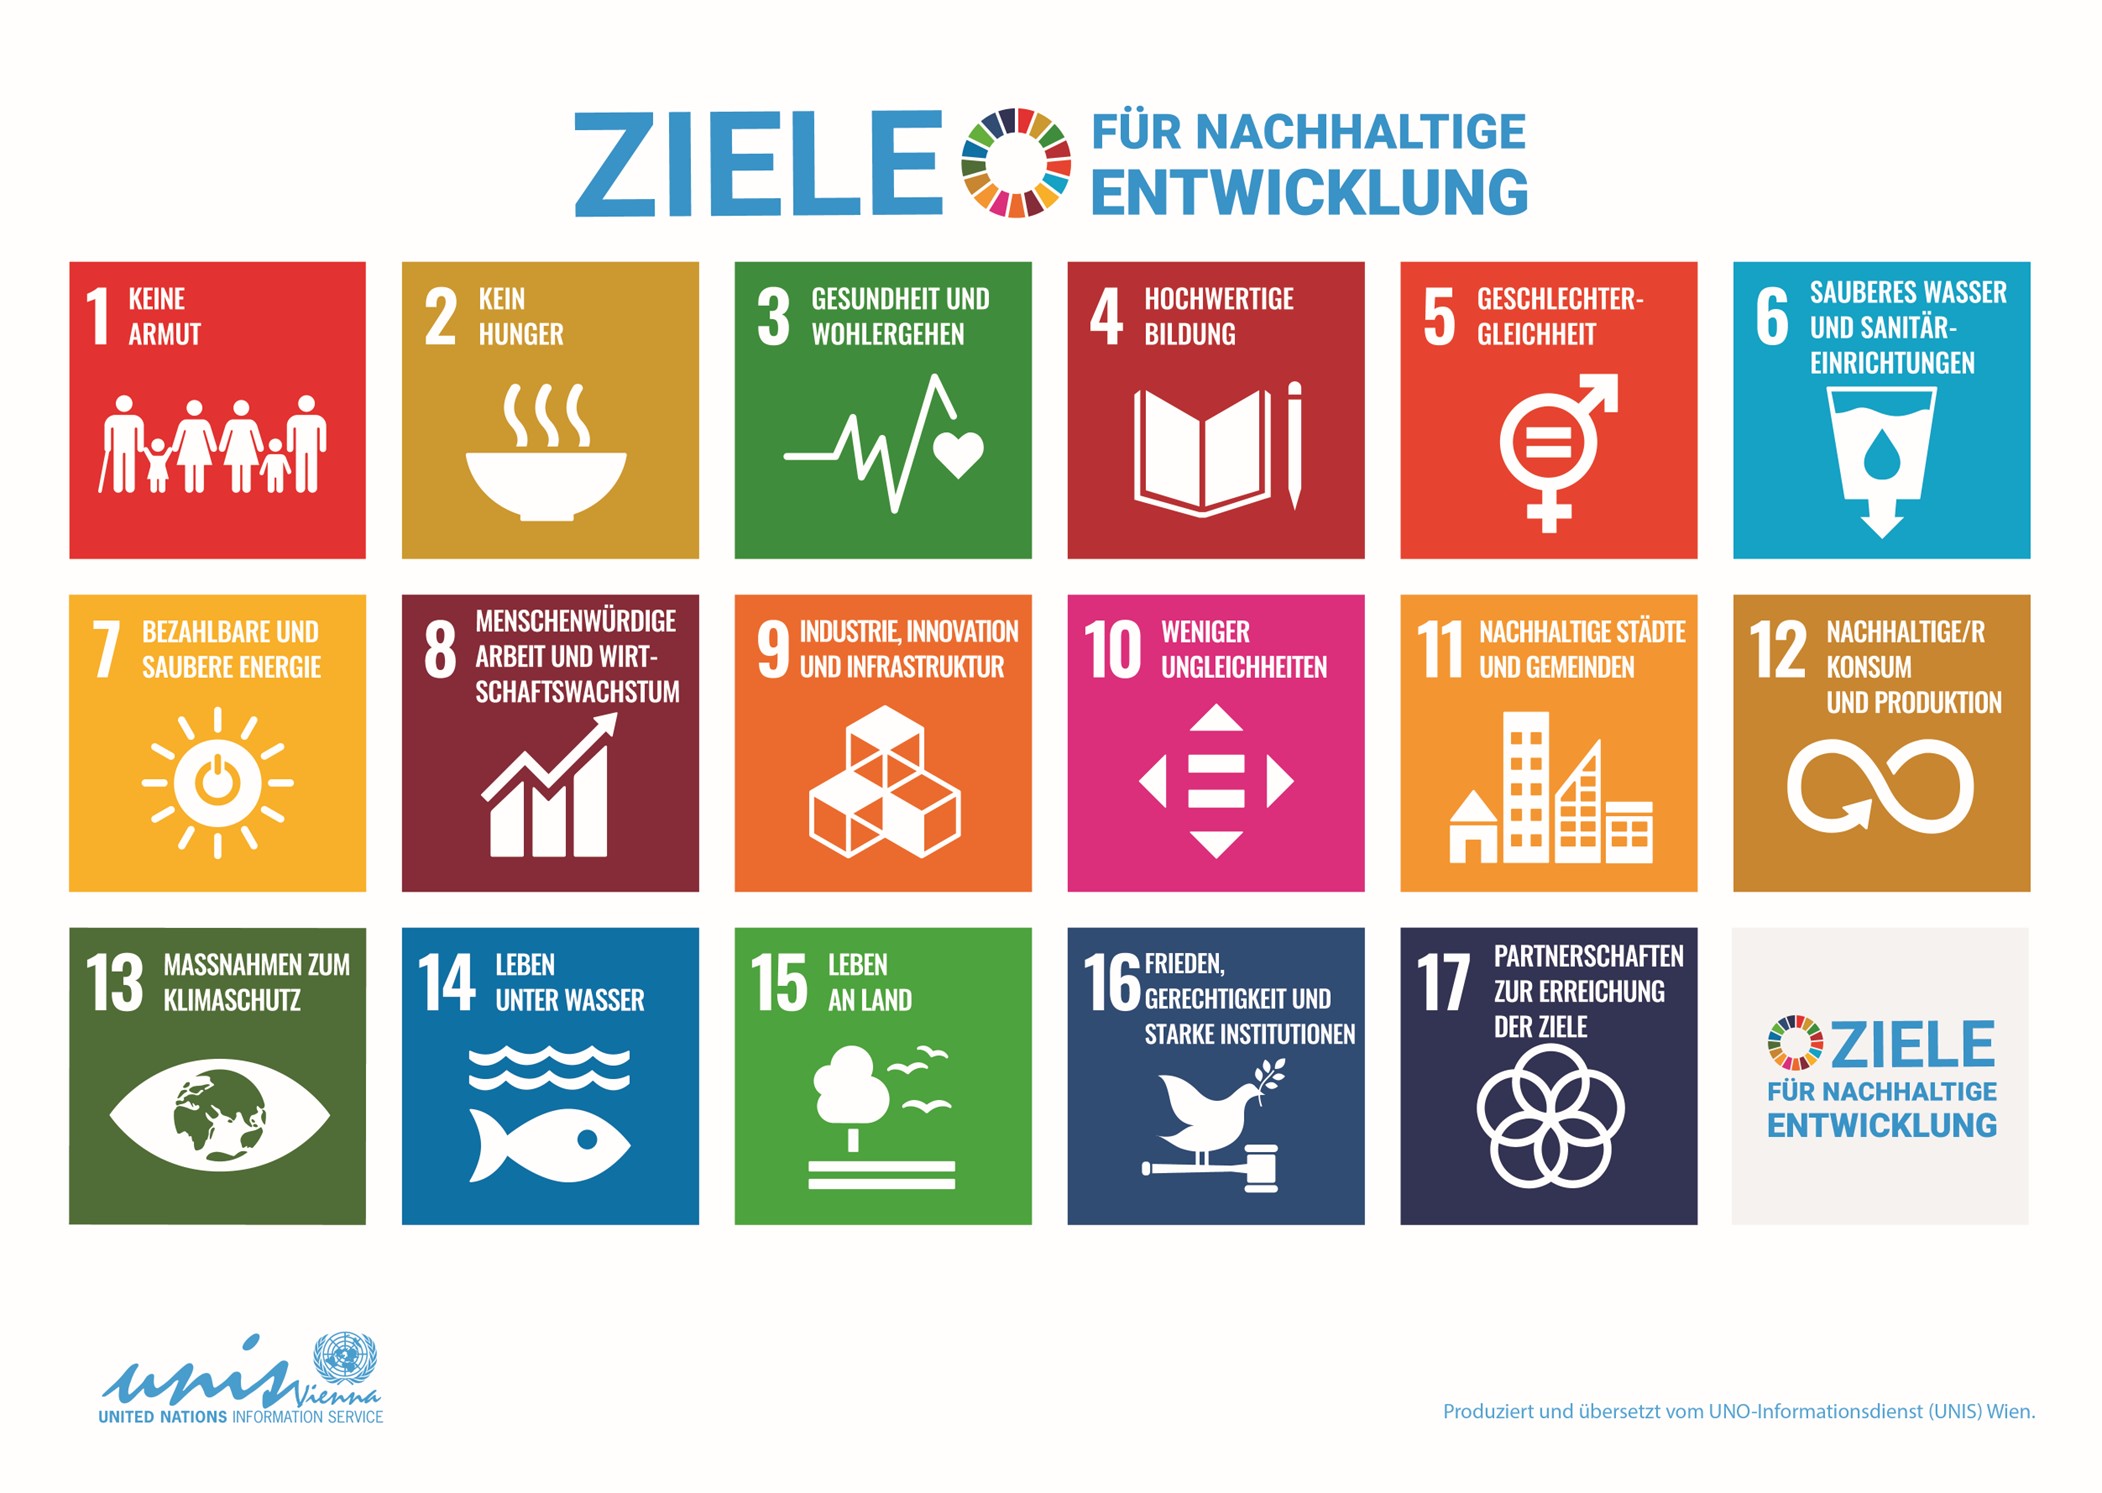 Die 17 Ziele für nachhaltige Entwicklung (Quelle: Vereinte Nationen, 2023)